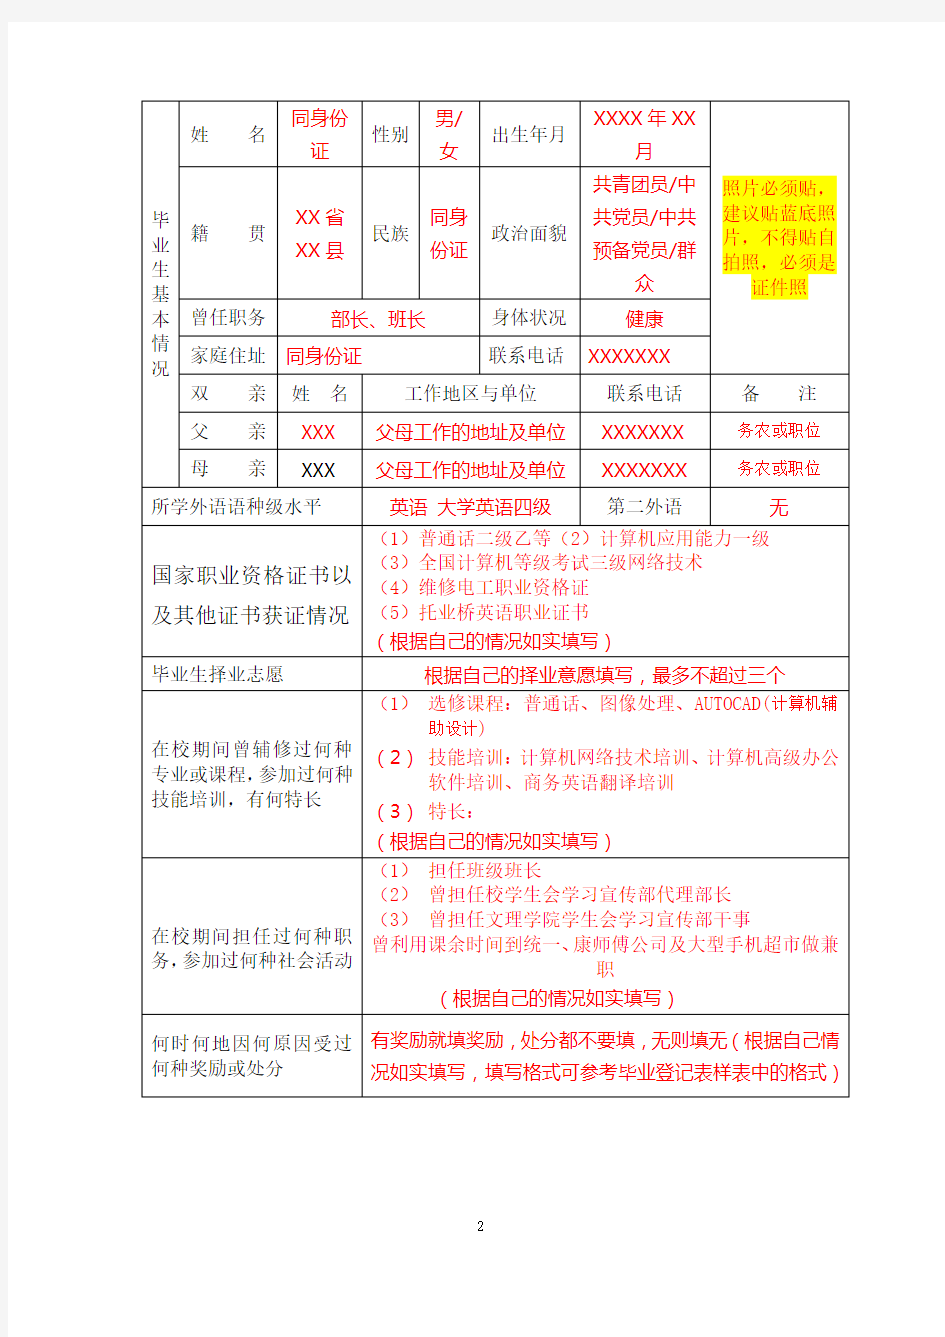 云南省普通大中专学校毕业生就业推荐表模板